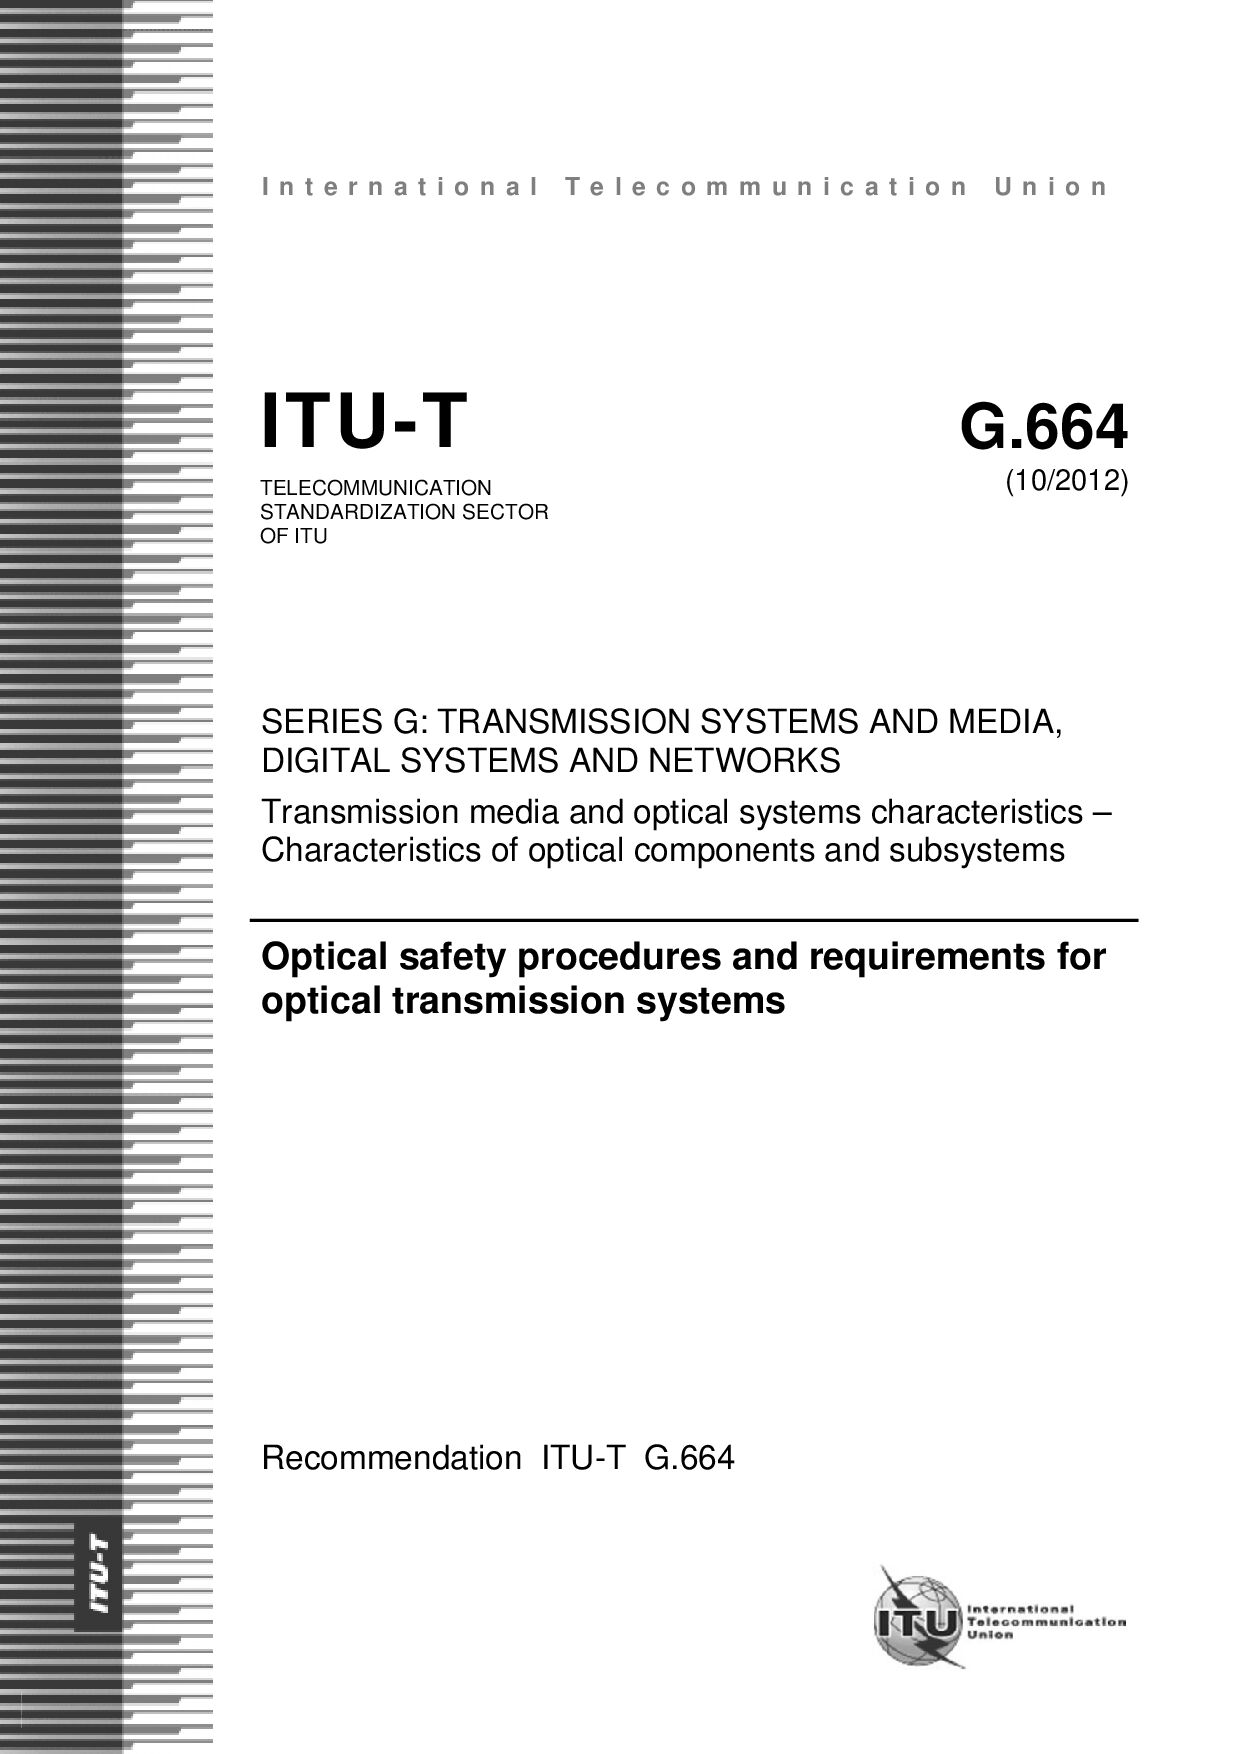 ITU-T G.664-2012